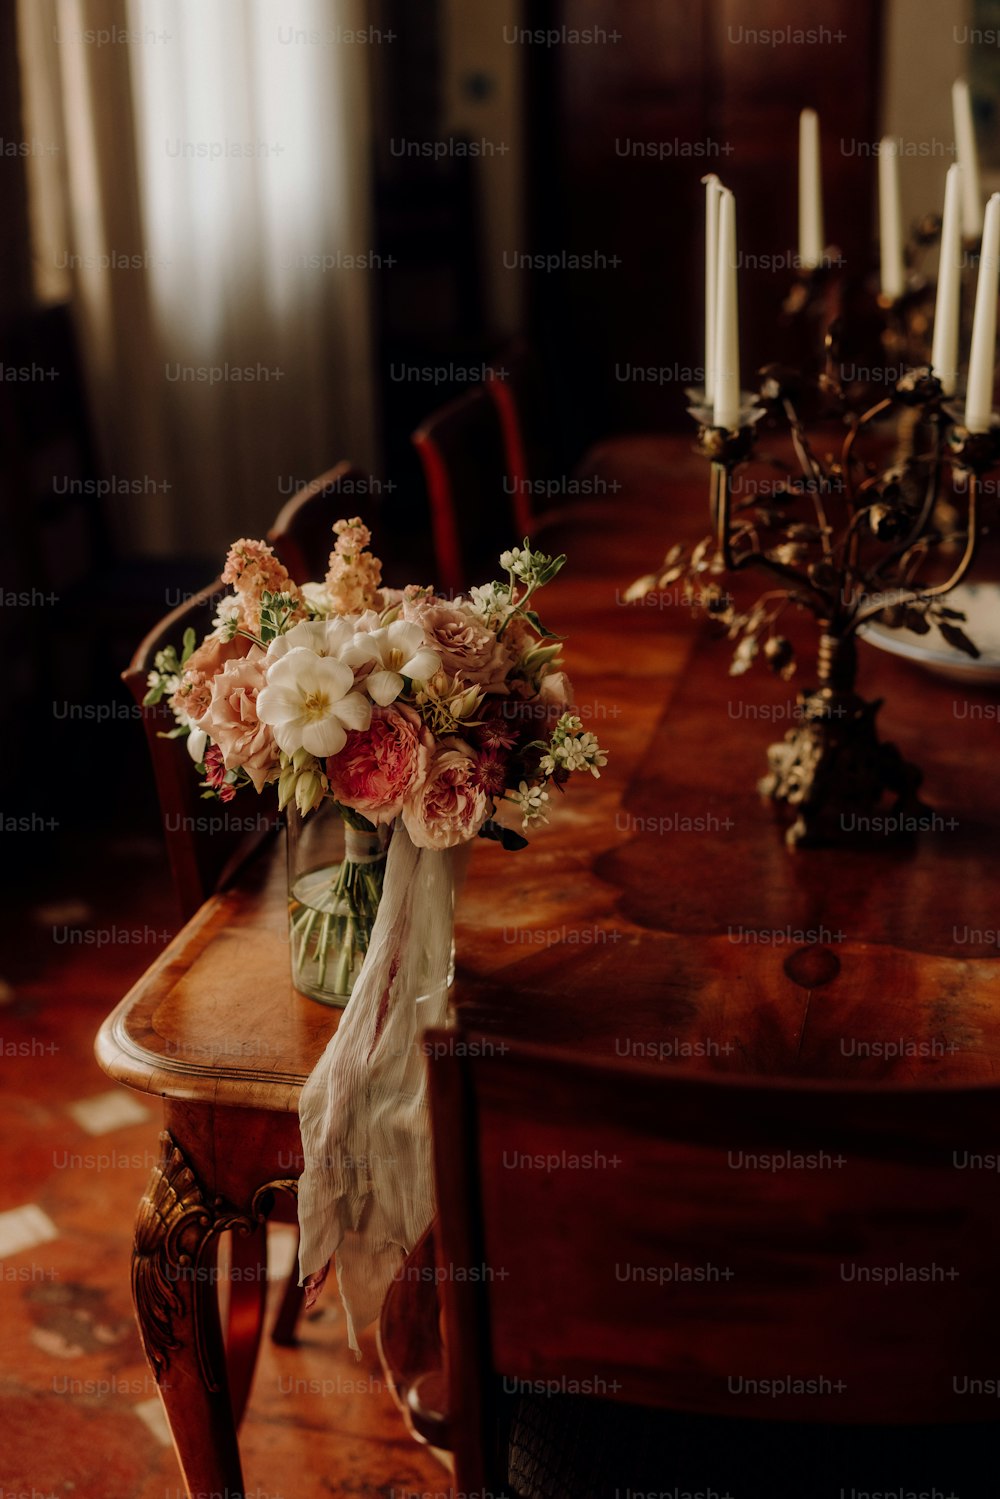 un tavolo di legno sormontato da un vaso pieno di fiori